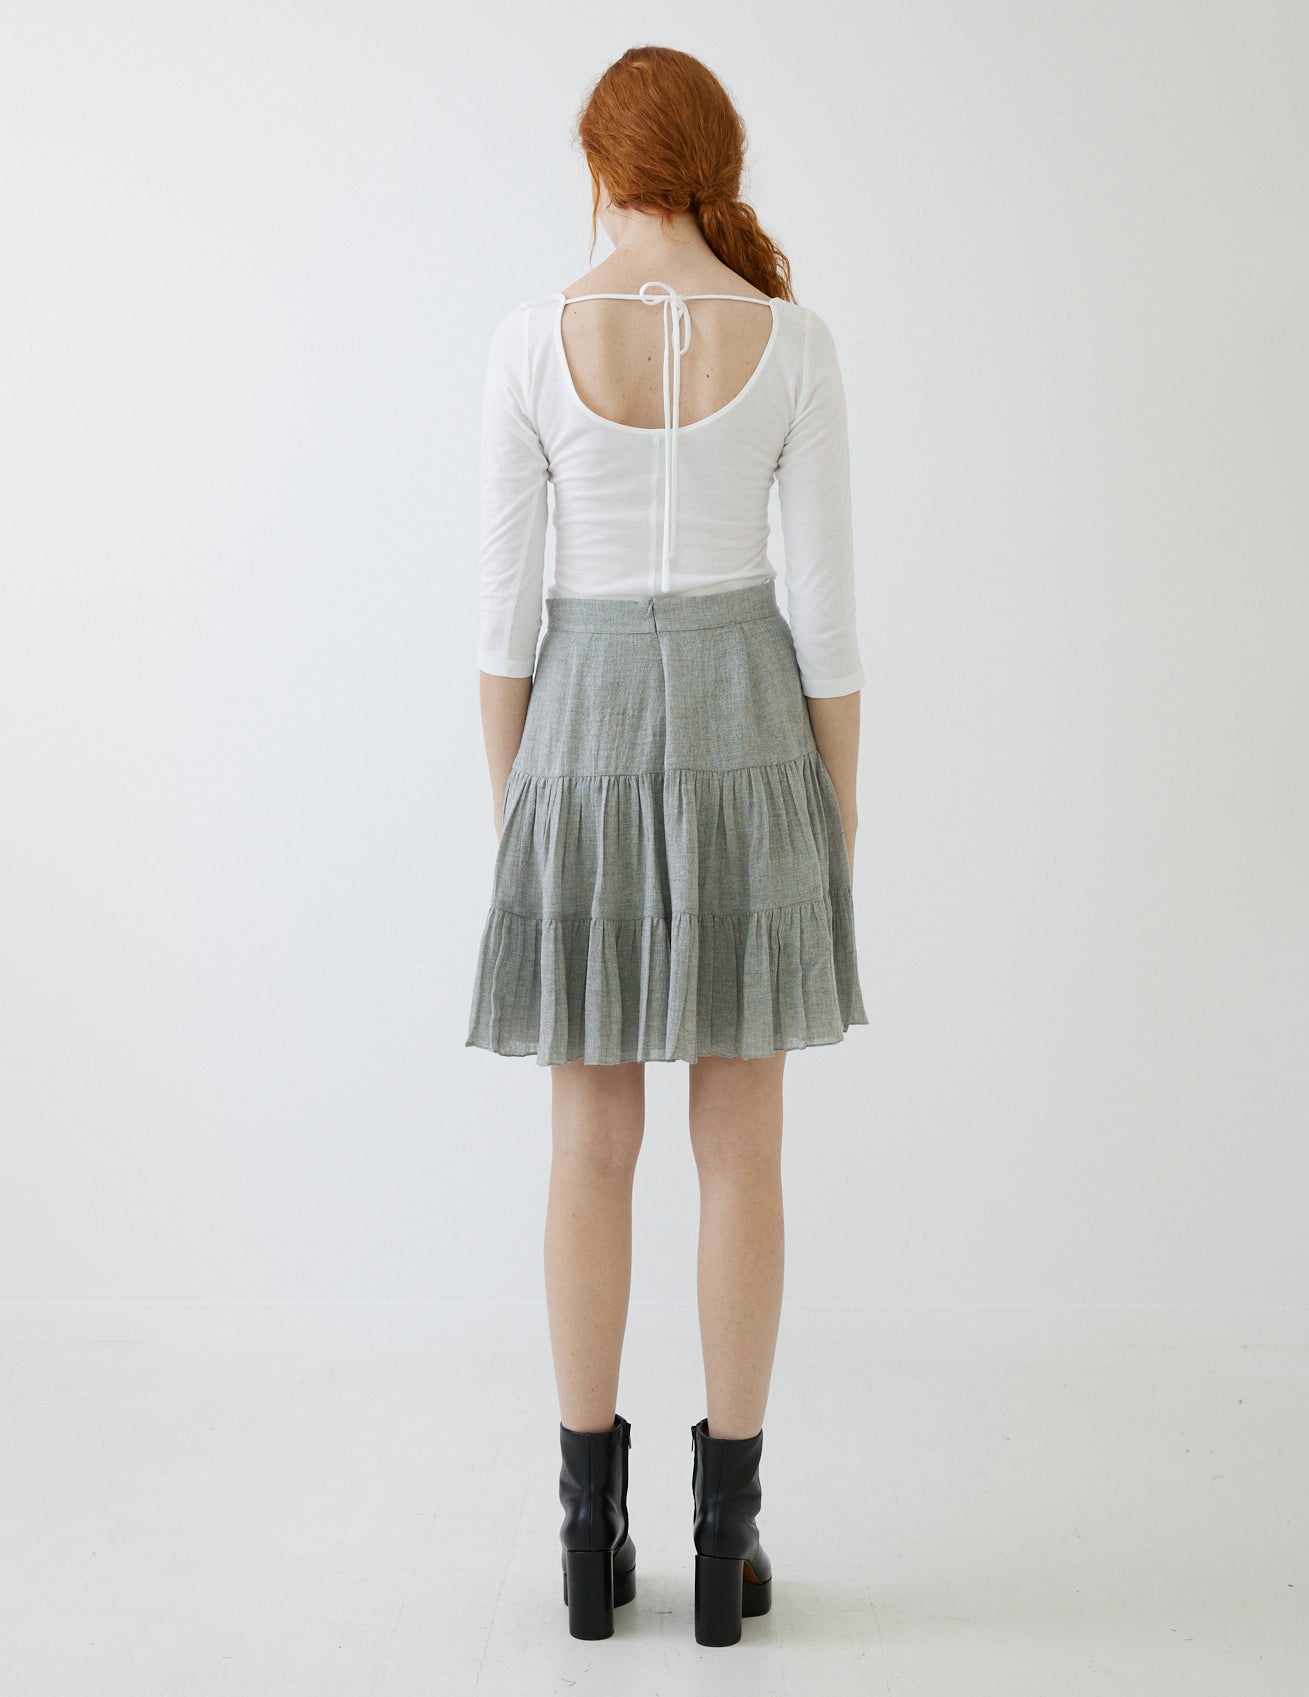 garland skirt